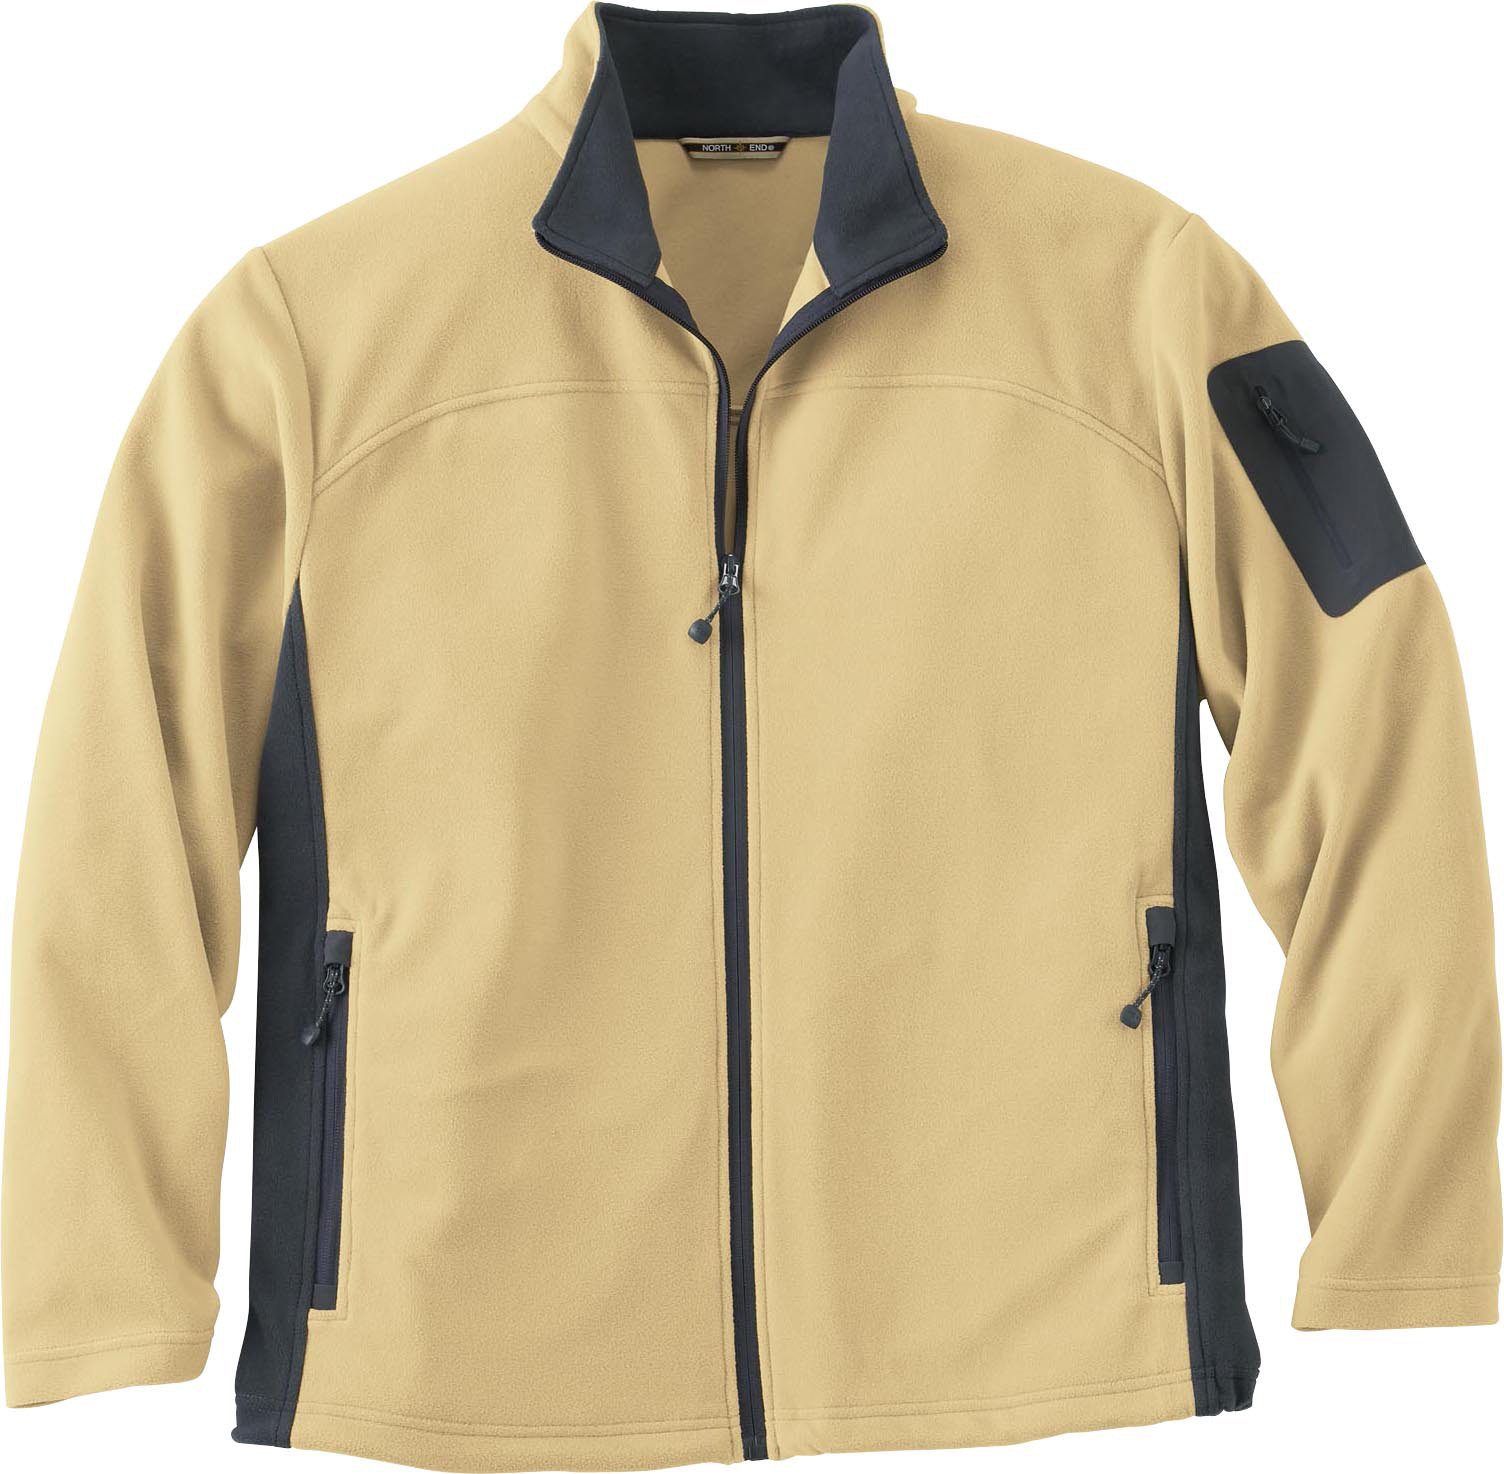 North End 88123 - Men's Full-Zip Microfleece Jacket